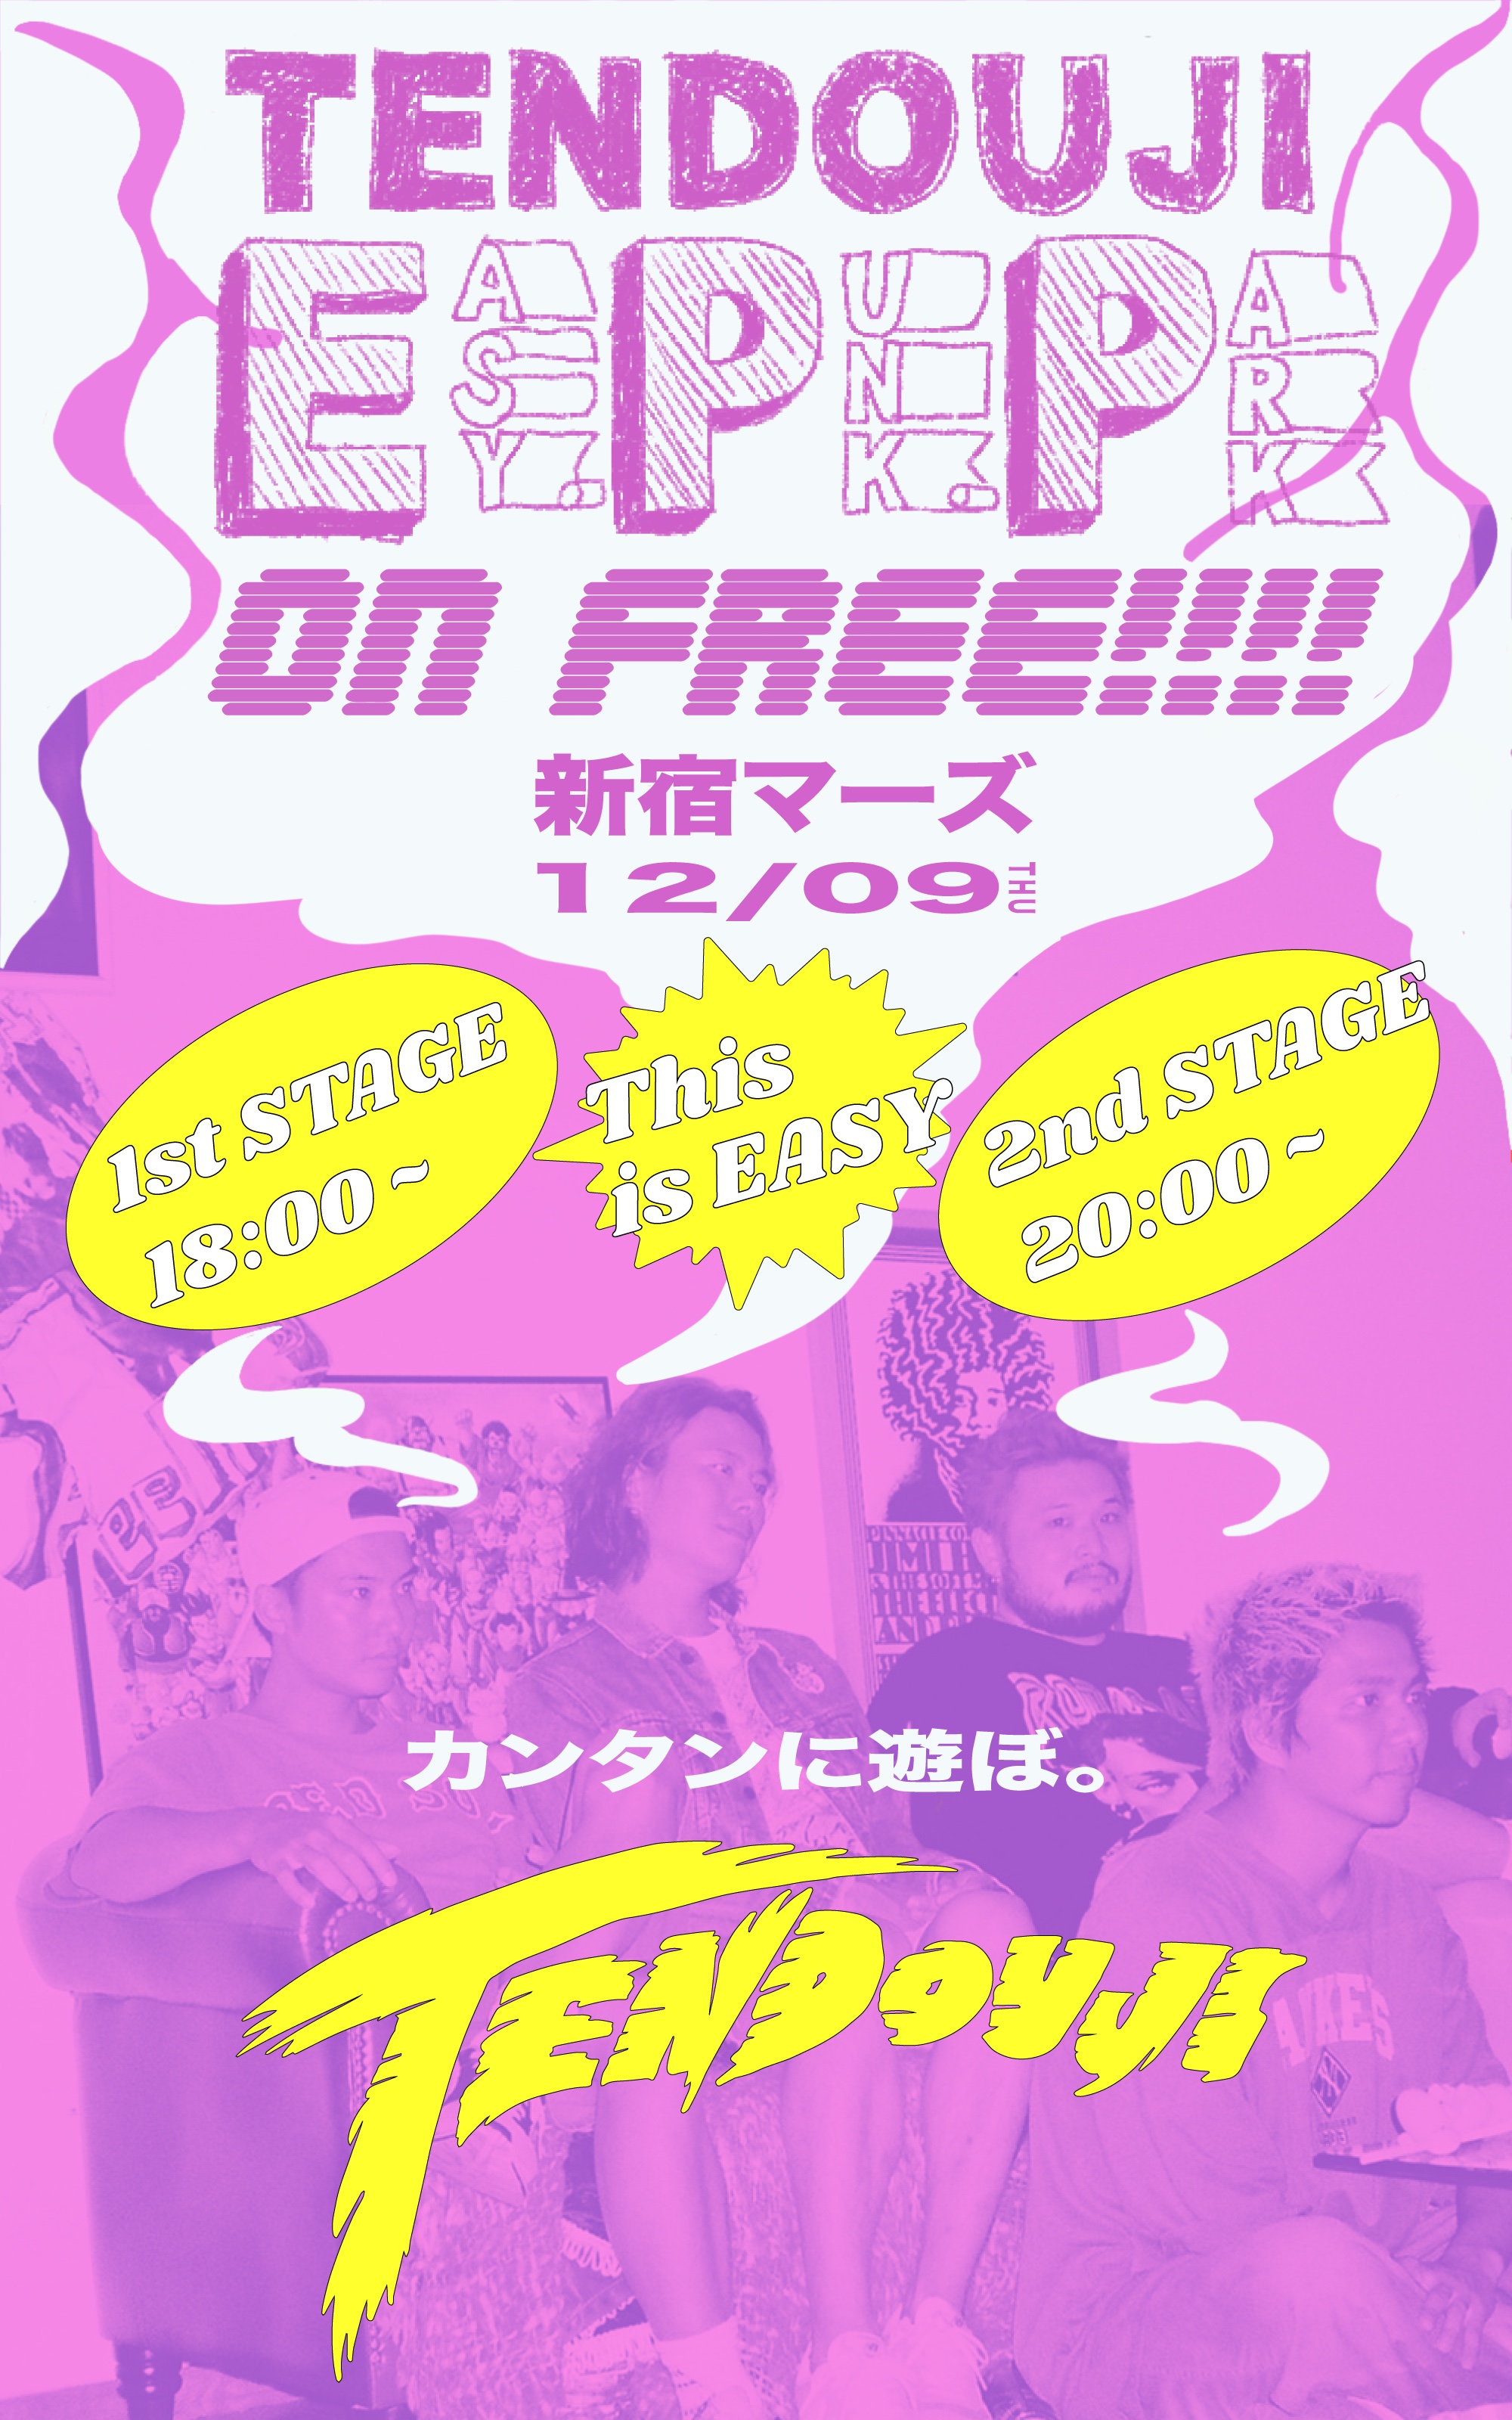 【18:00〜の回】TENDOUJI EASY PUNK PARK on free!!